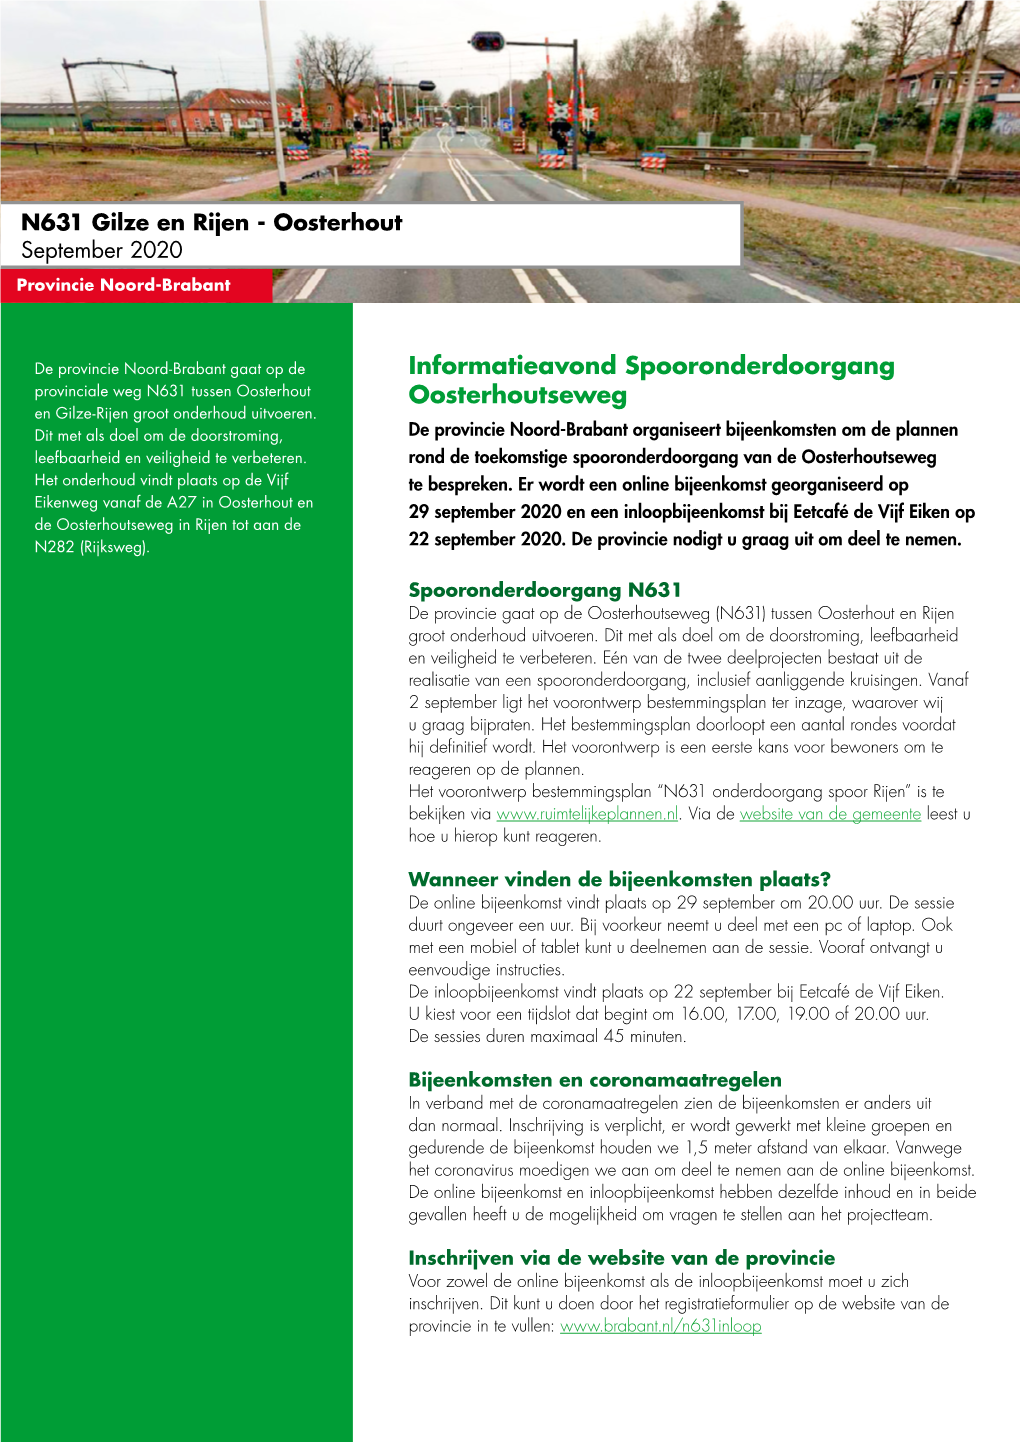 Nieuwsbrief N631 Gilze En Rijen-Oosterhout